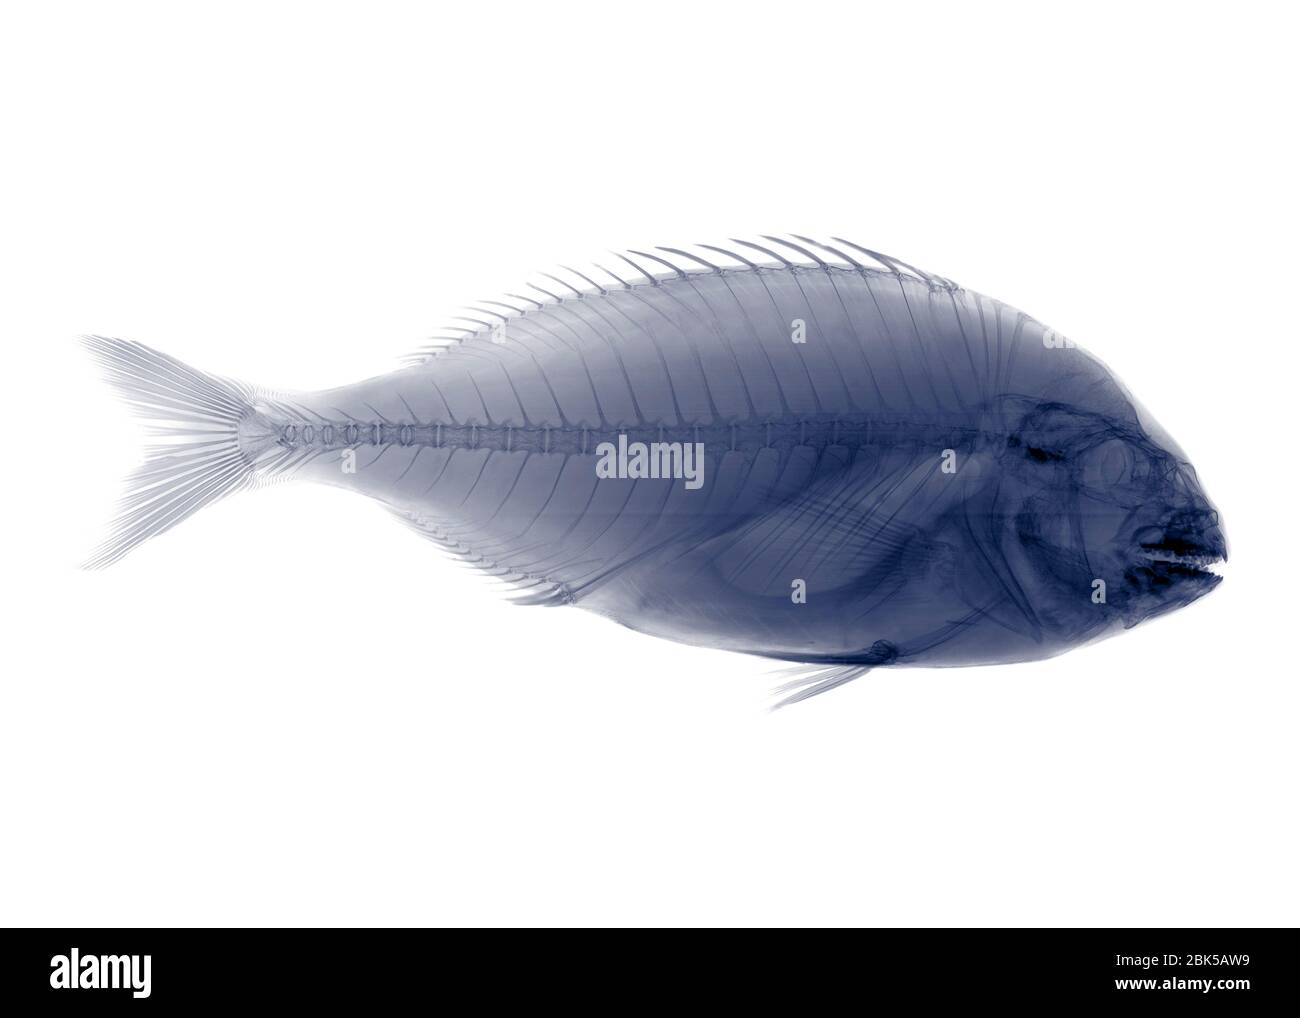 Tilapia fish, X-ray. Stock Photo